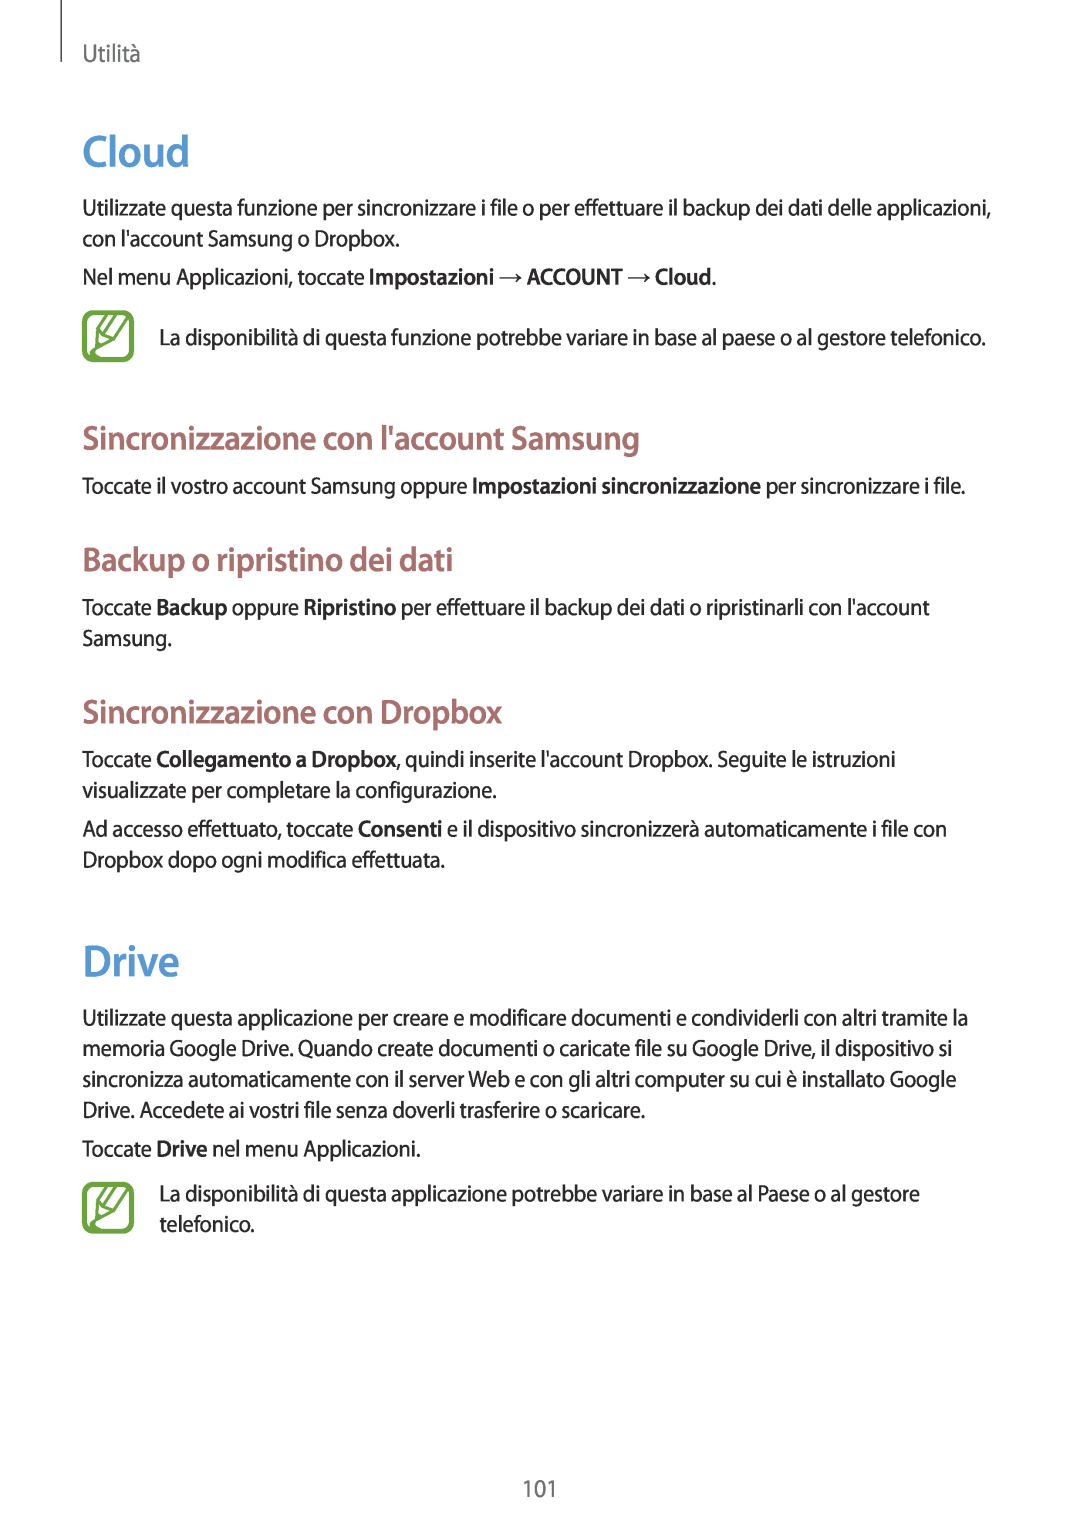 Samsung GT-I9515ZWAROM manual Cloud, Drive, Sincronizzazione con laccount Samsung, Backup o ripristino dei dati, Utilità 